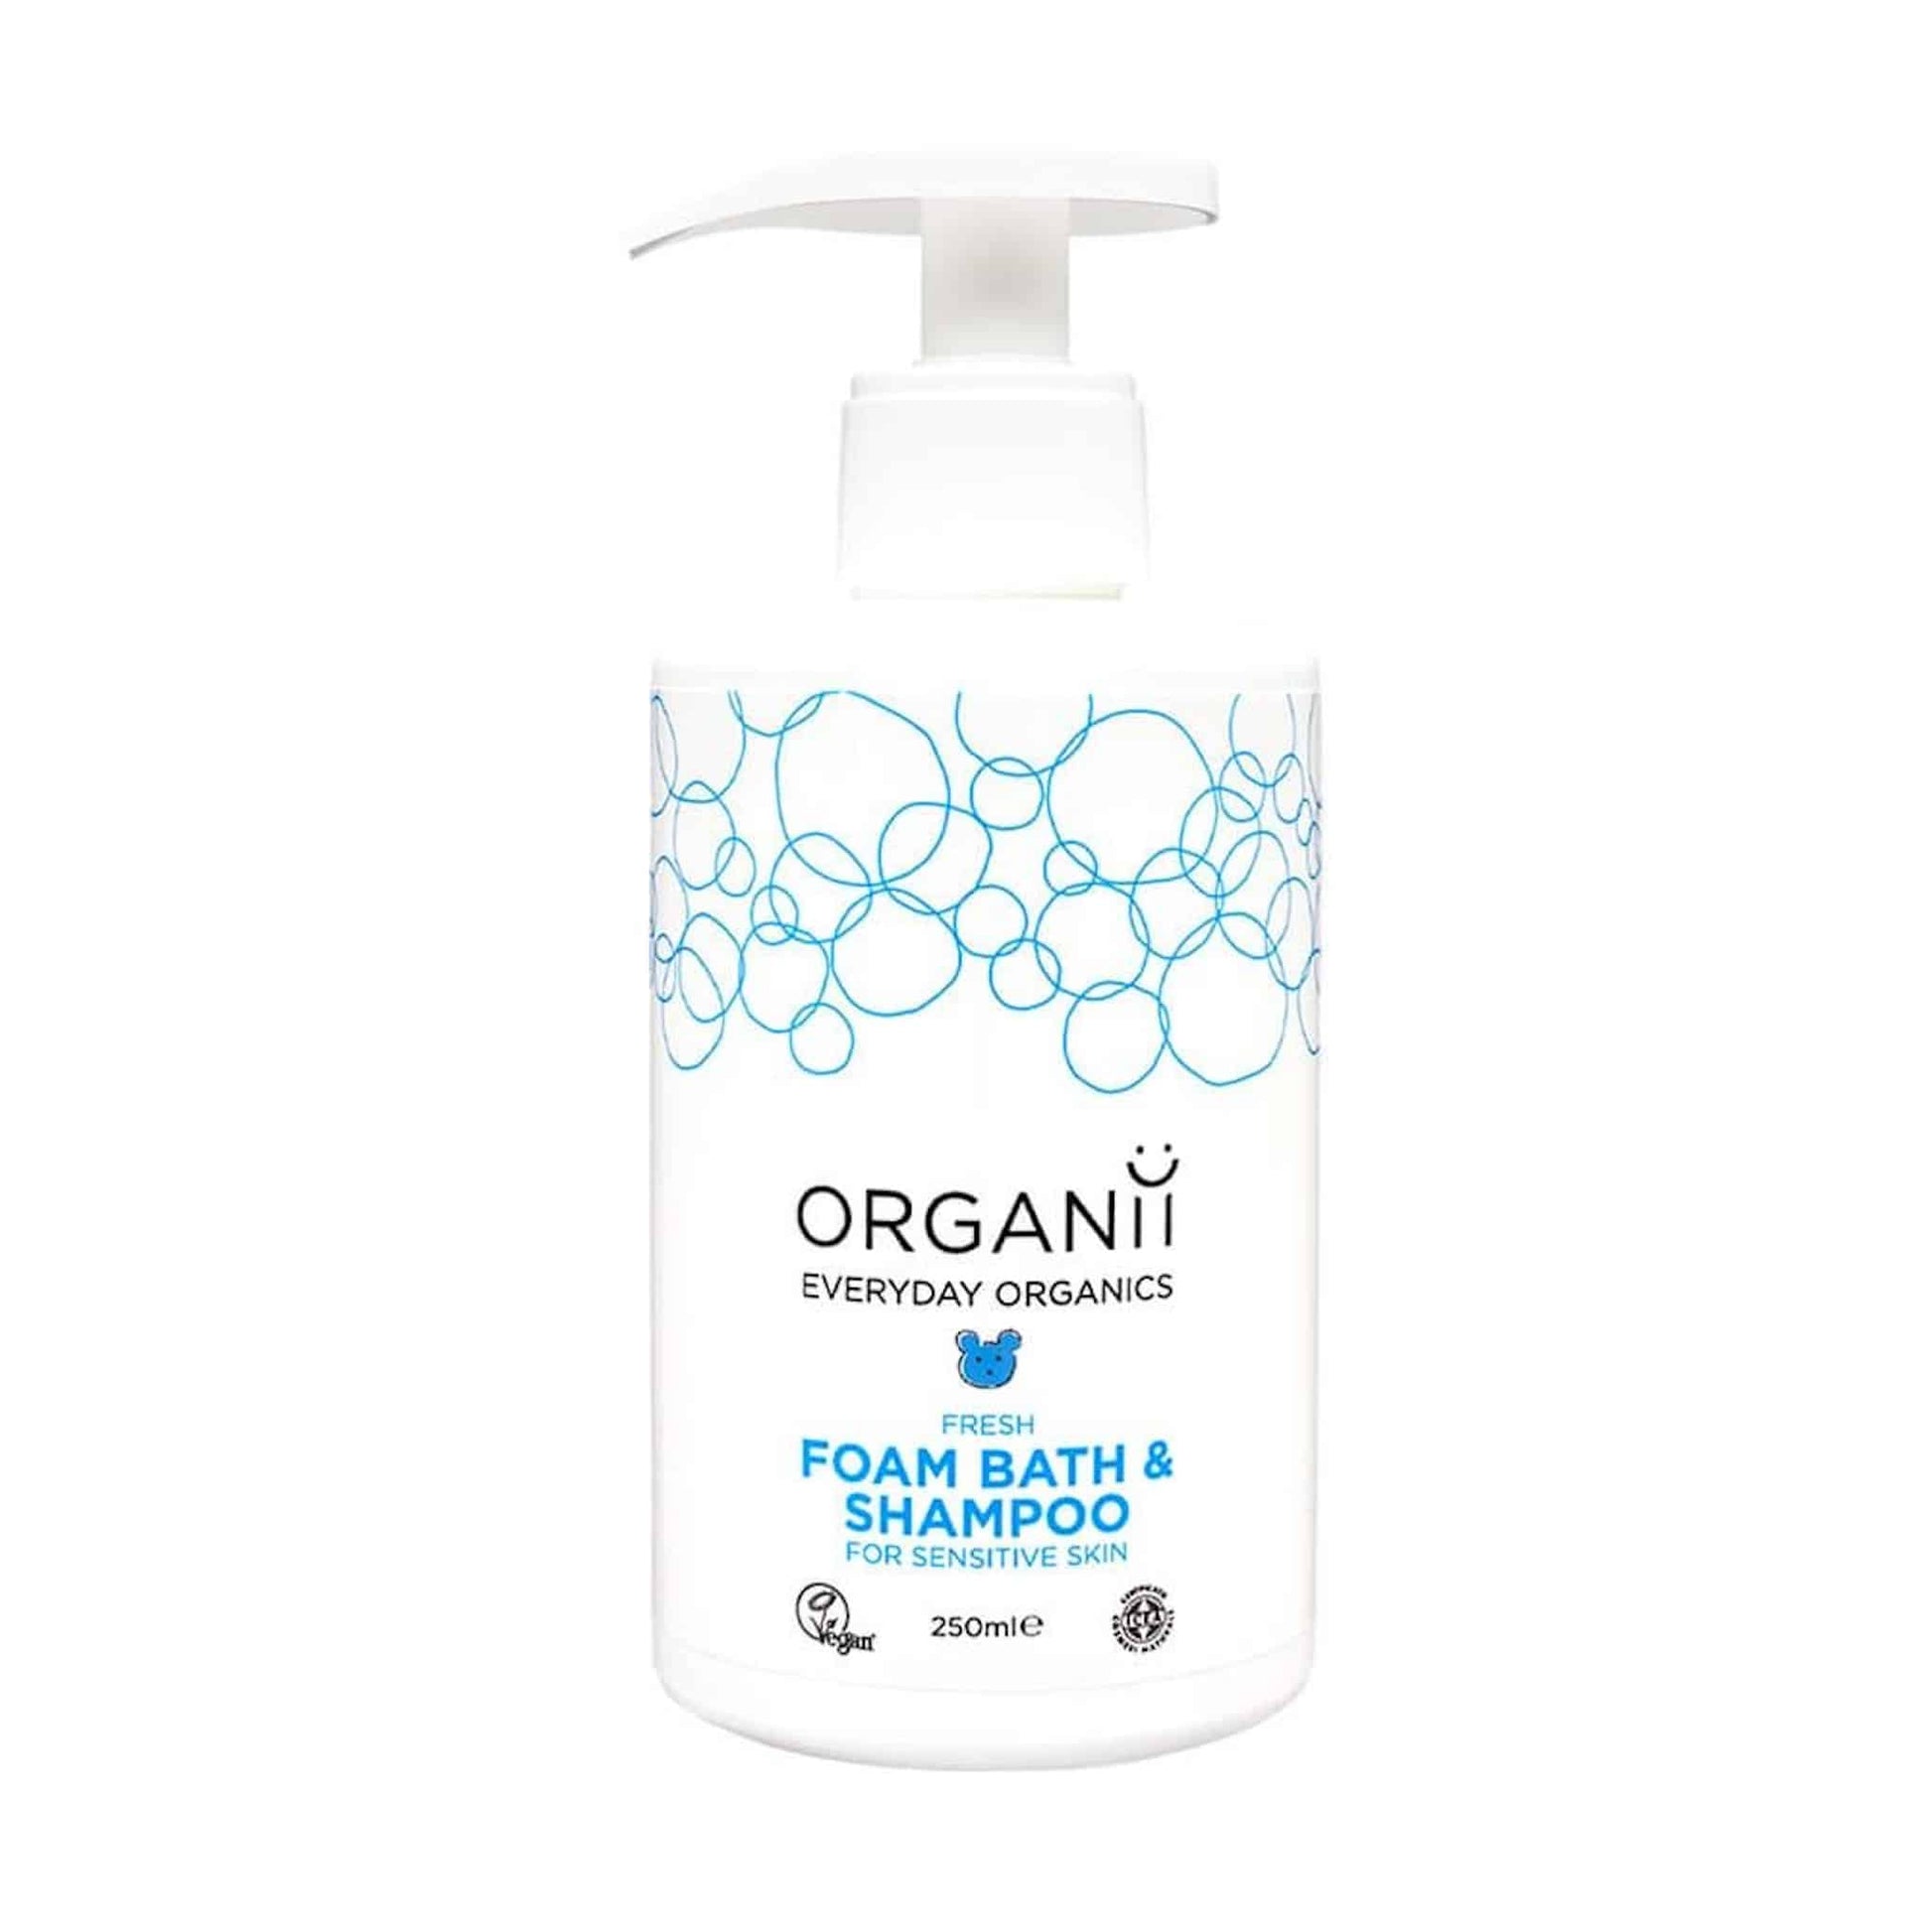 Organii Fresh Foam Bath & Shampoo 250ml